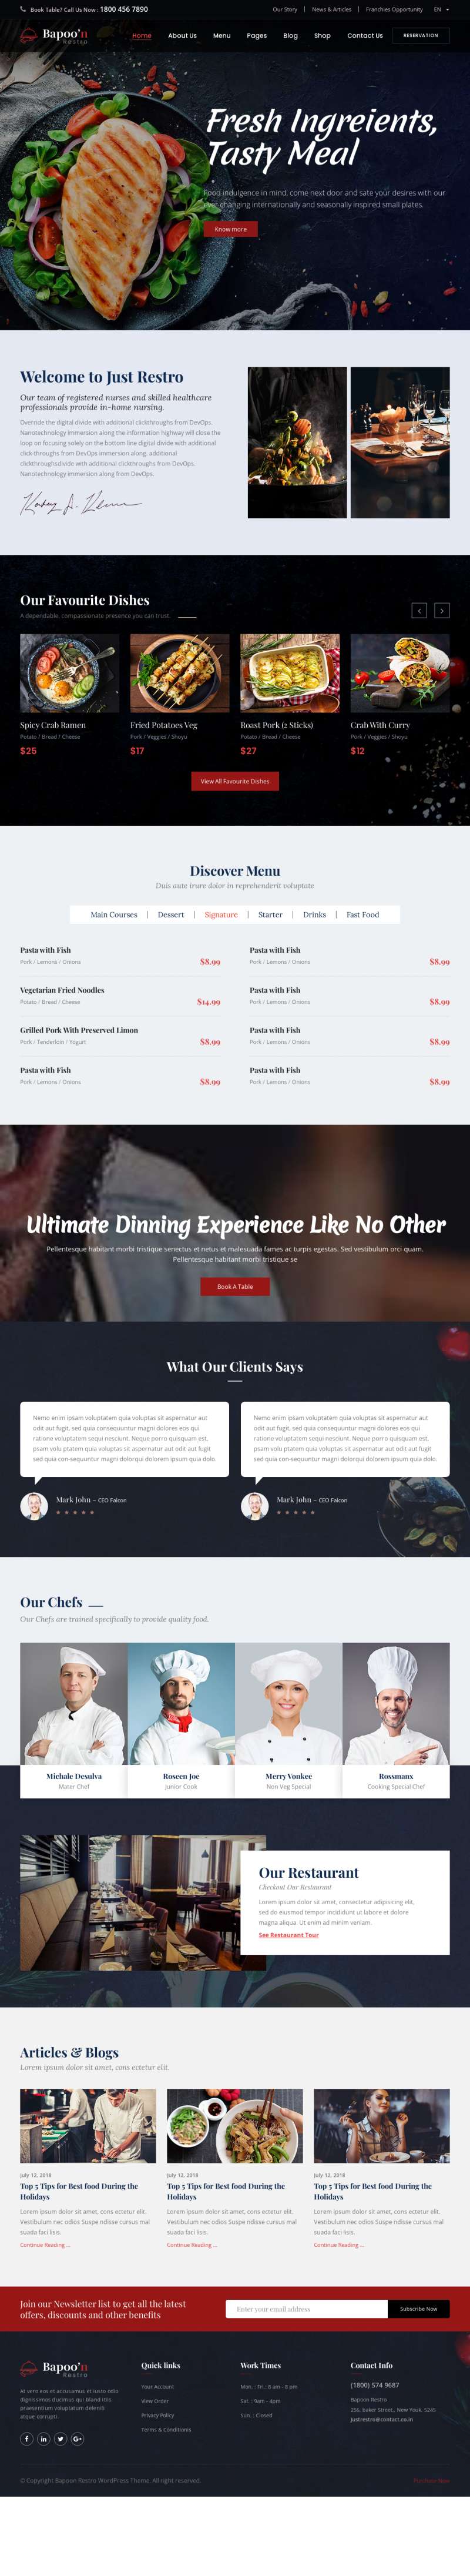 五星级餐厅美食预订网站HTML模板